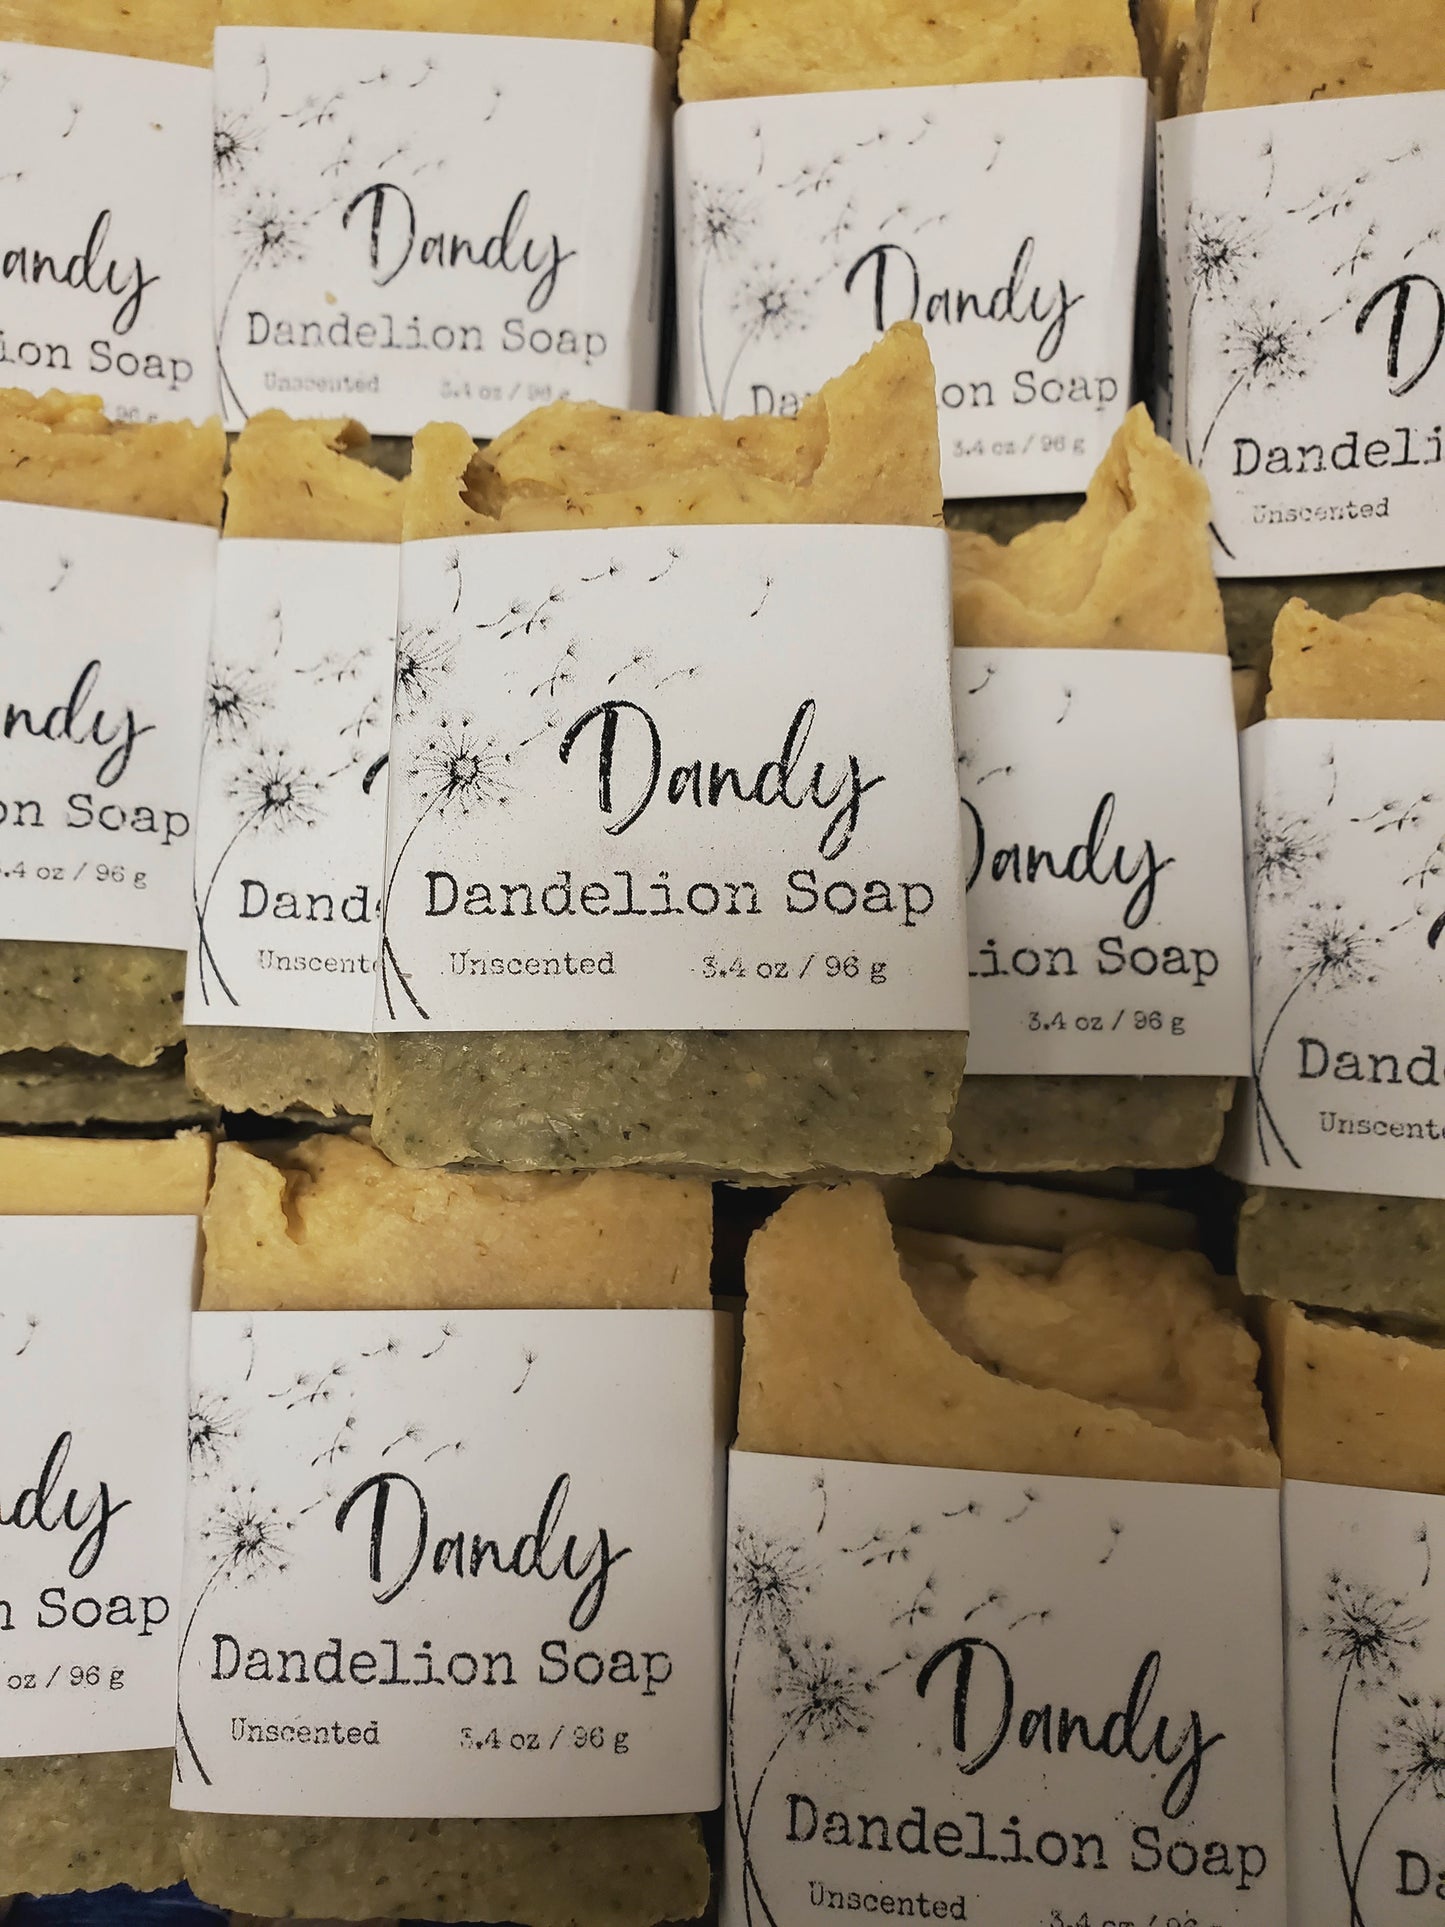 Dandy Dandelion Soap